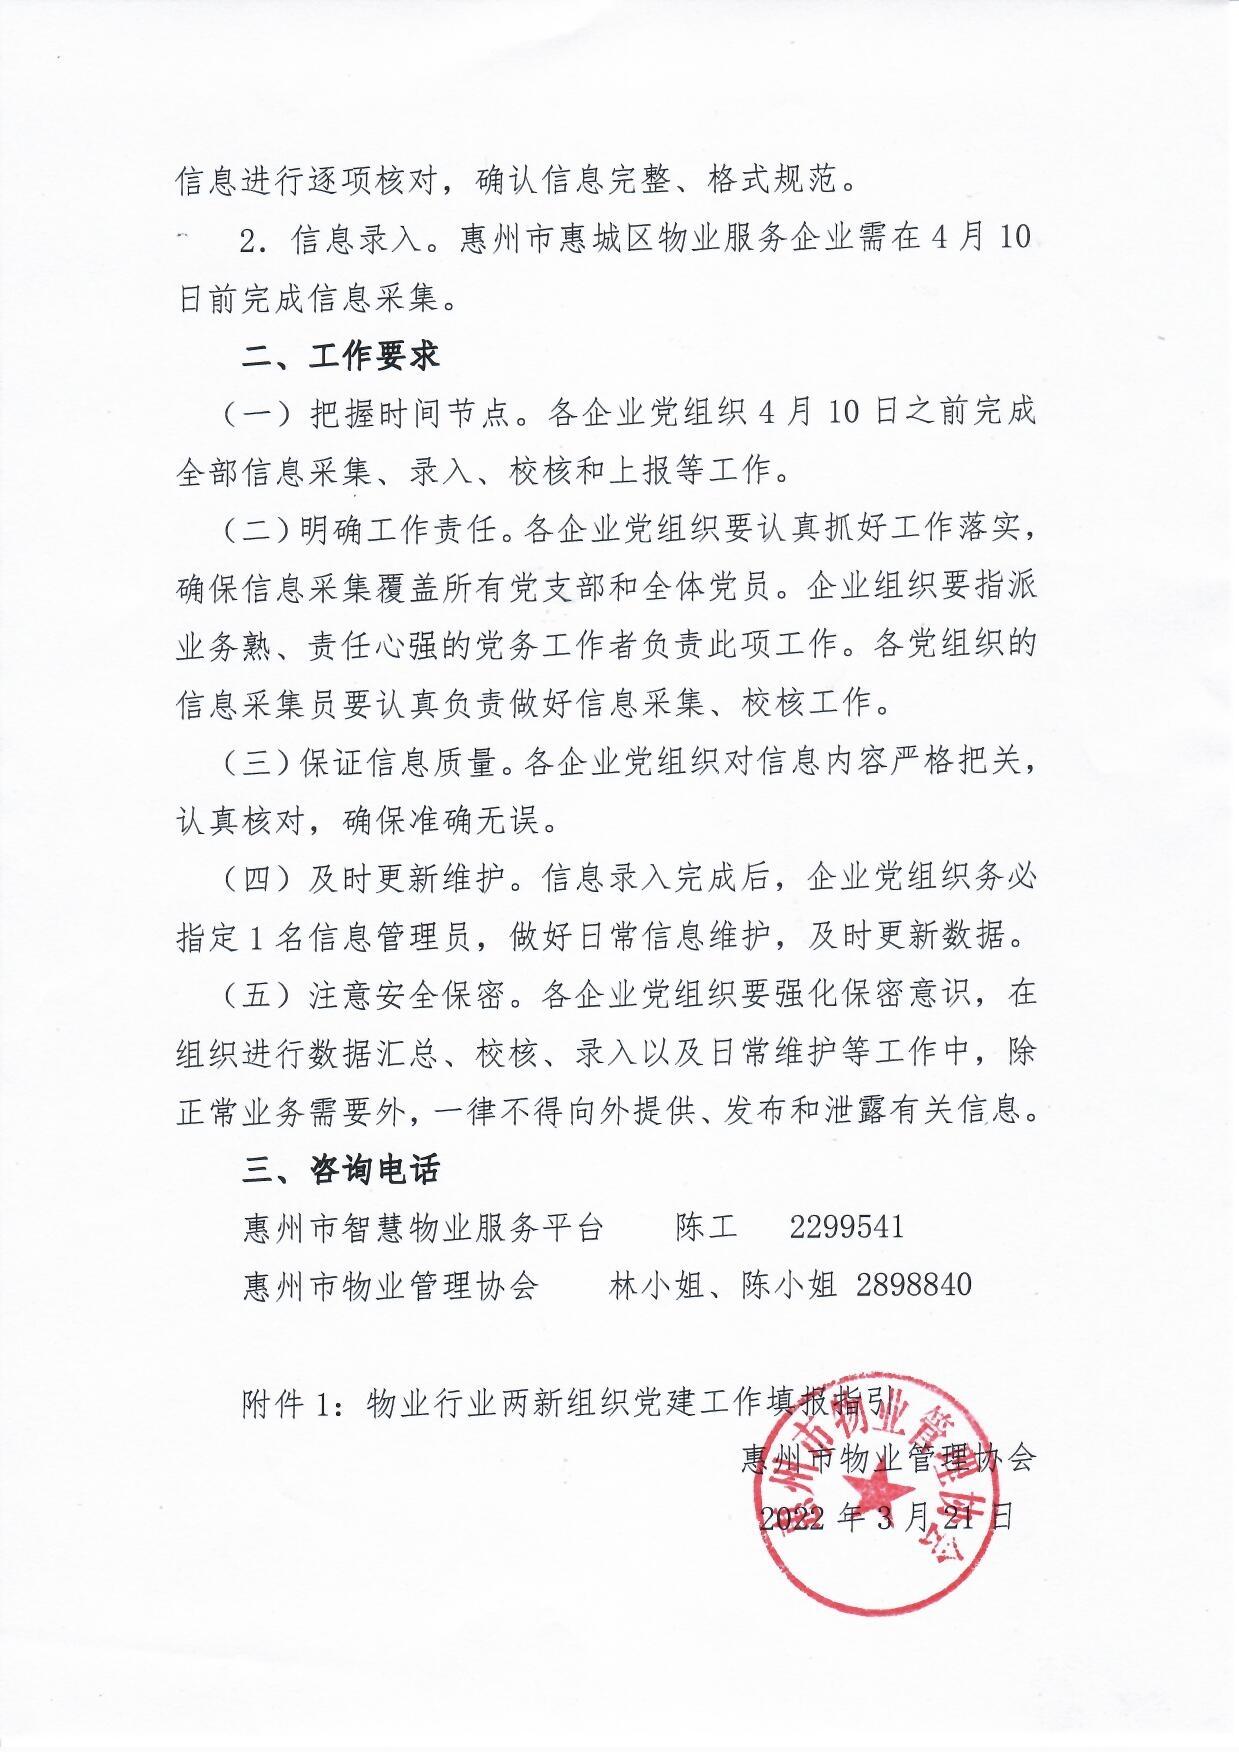 关于开展惠州市惠城区物业服务企业党组织和党员基本信息采集工作的通知2.jpg